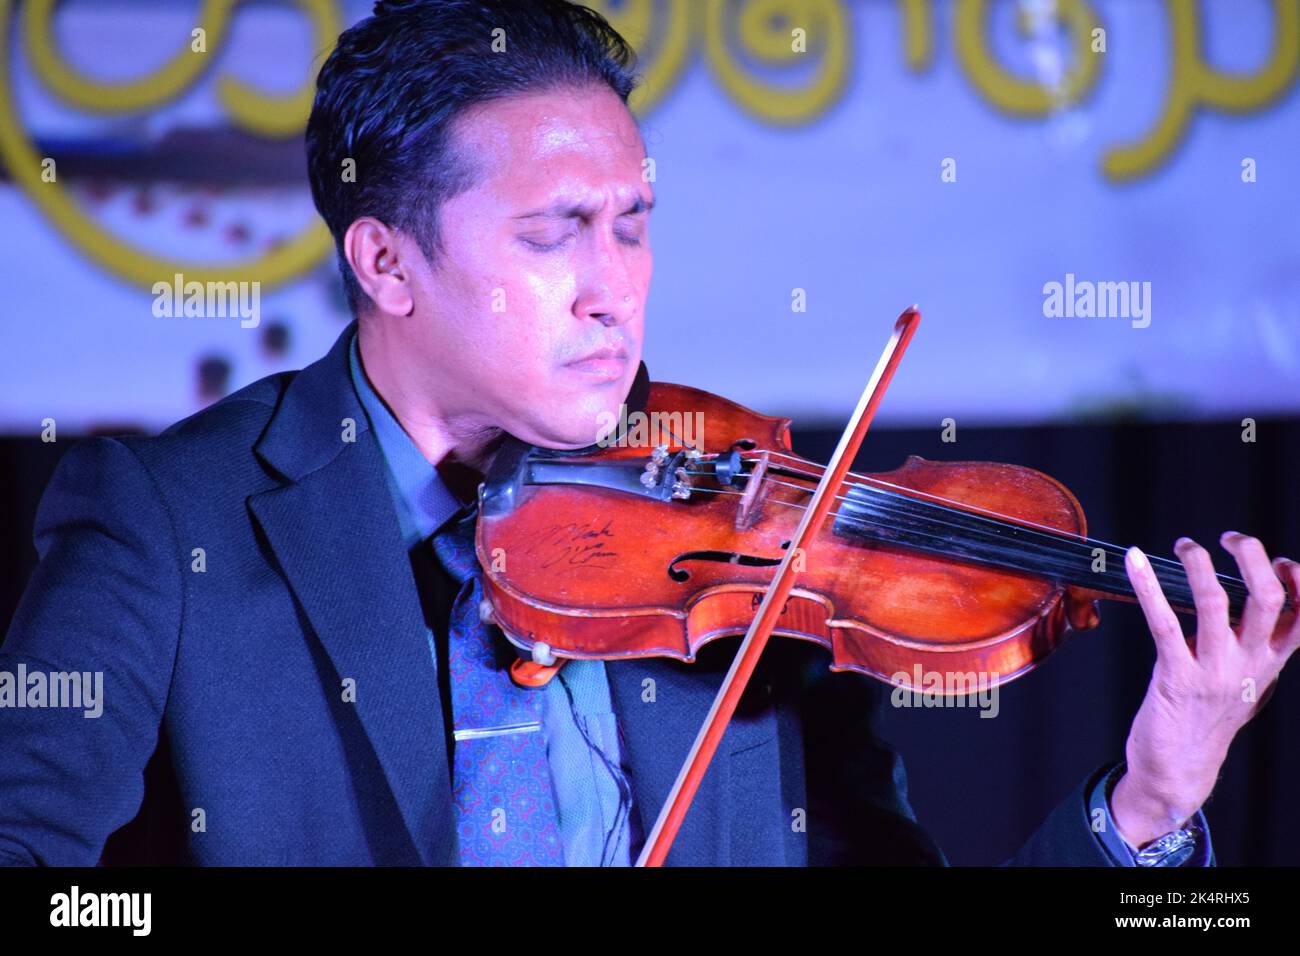 Homme jouant de violon montrant des émotions et des expressions Banque D'Images